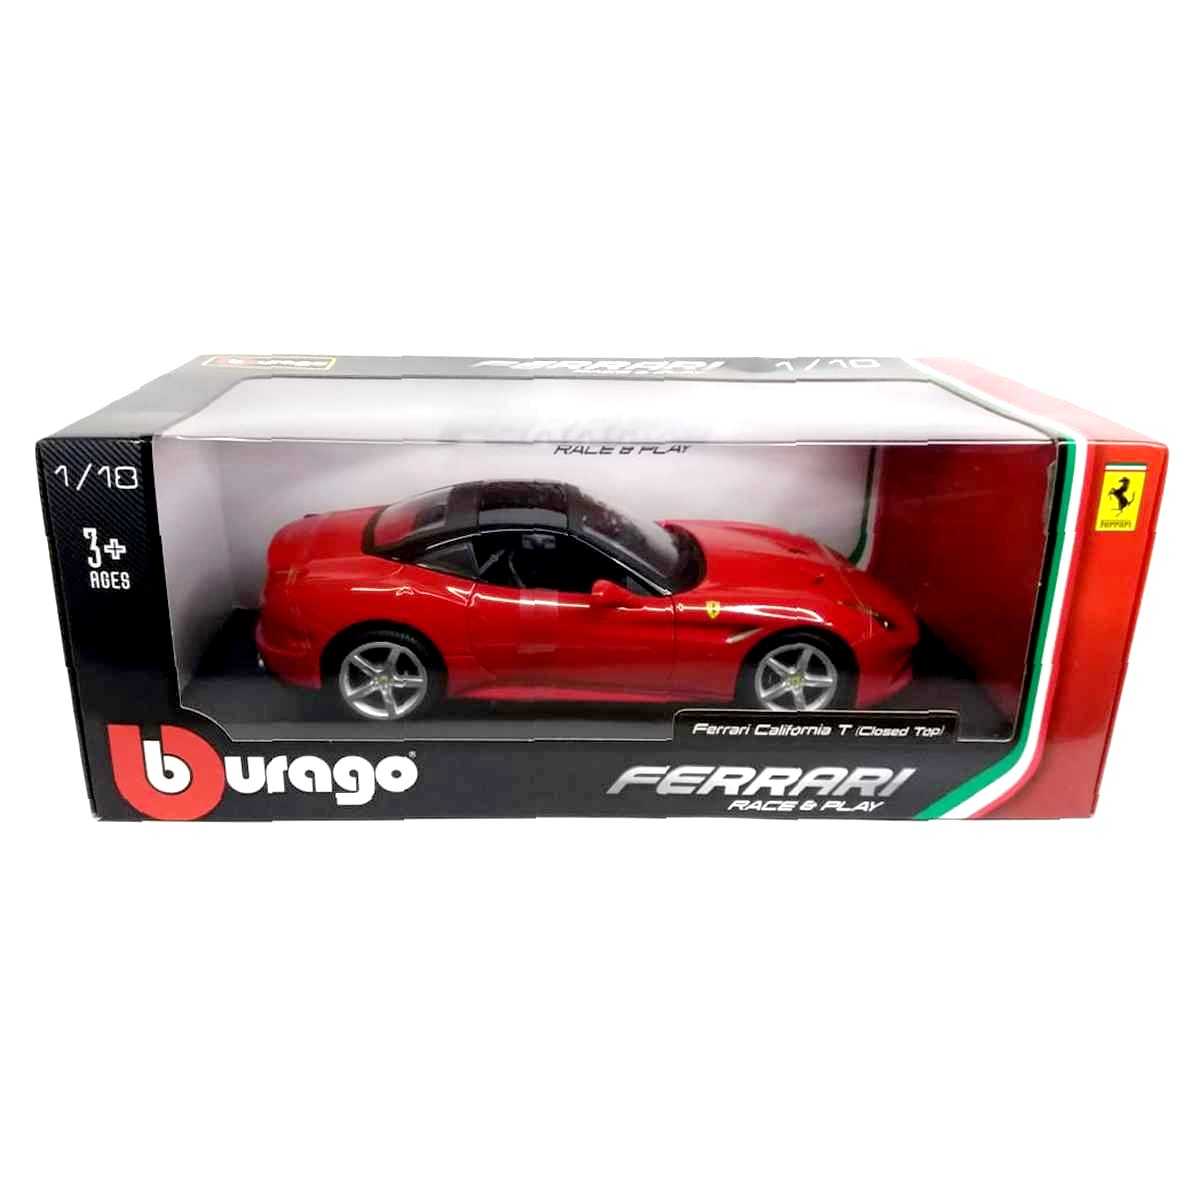 Bburago 1/18 Ferrari California T Red Closed Top Race & Play 16003